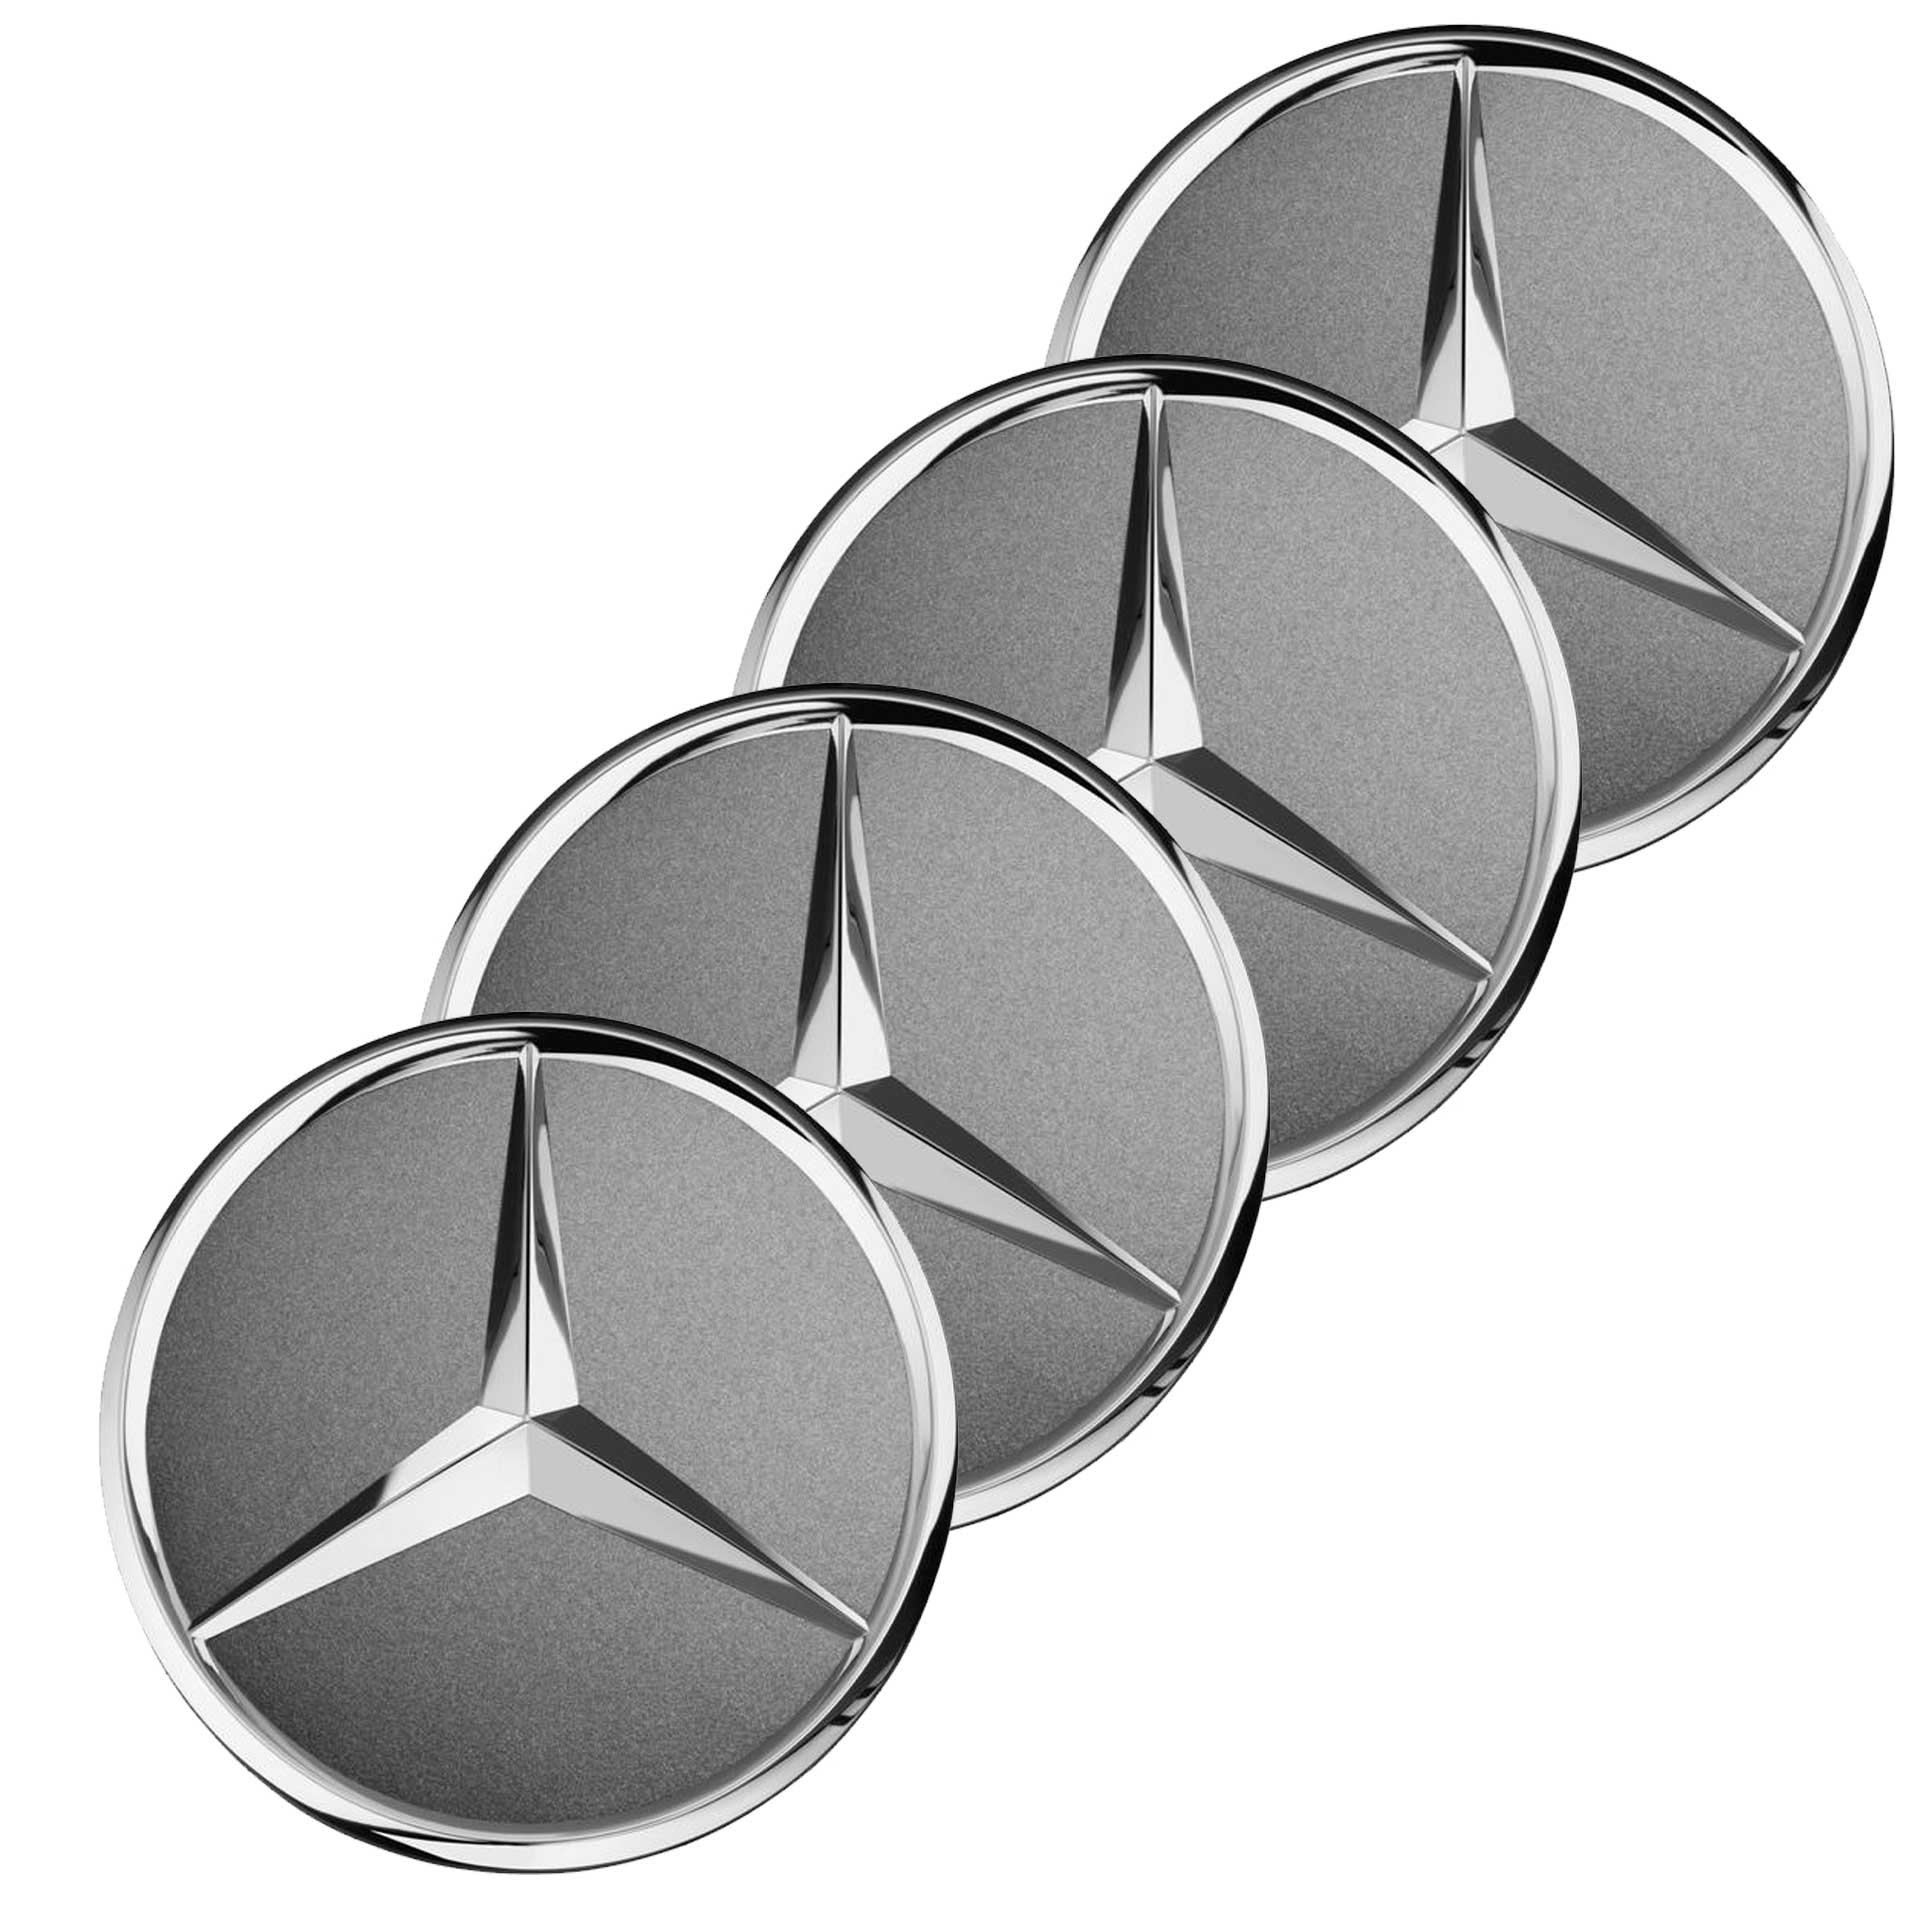 Mercedes-Benz Radnabenabdeckung Stern tremolit-metallic 4-teiliger Satz